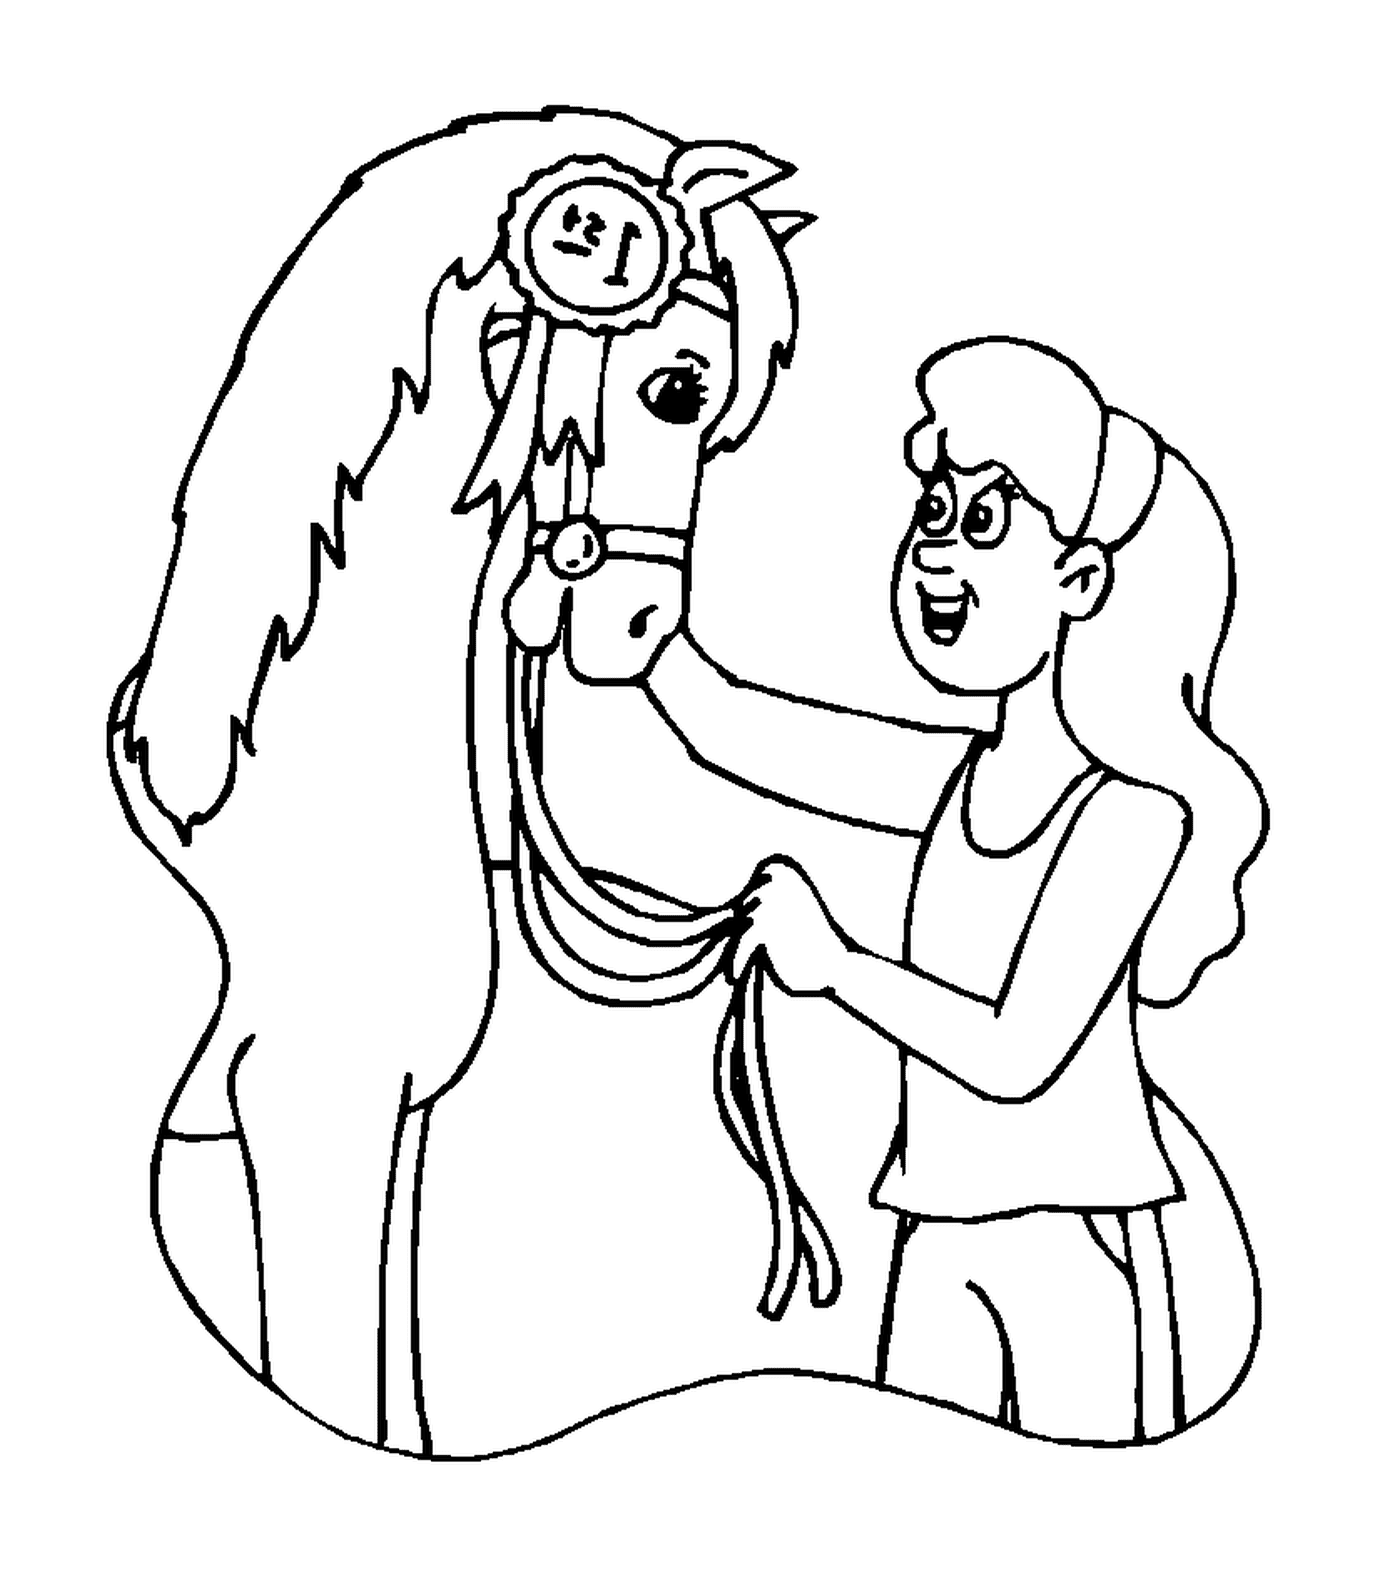   Jeune fille s'occupant de son cheval avec tendresse 